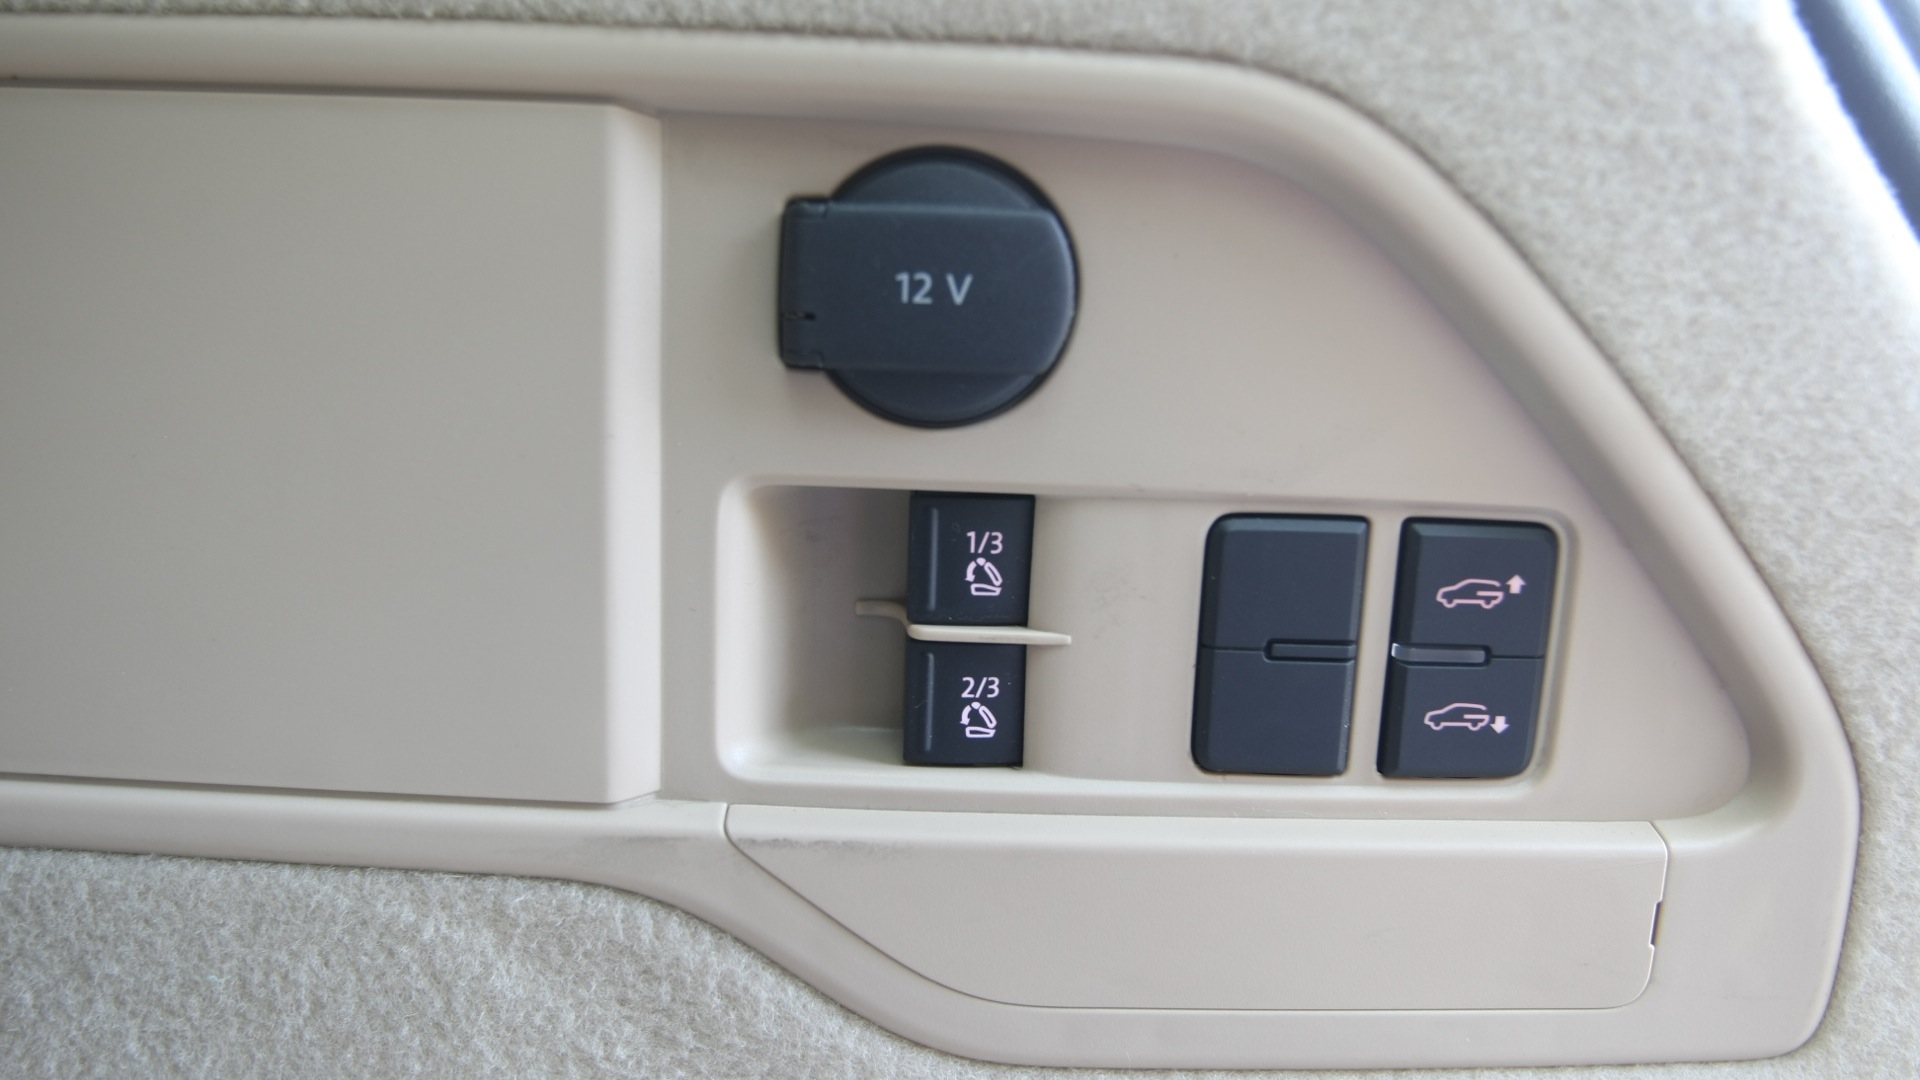 Volkswagen-Touareg-2012-V6-TDi-Interior